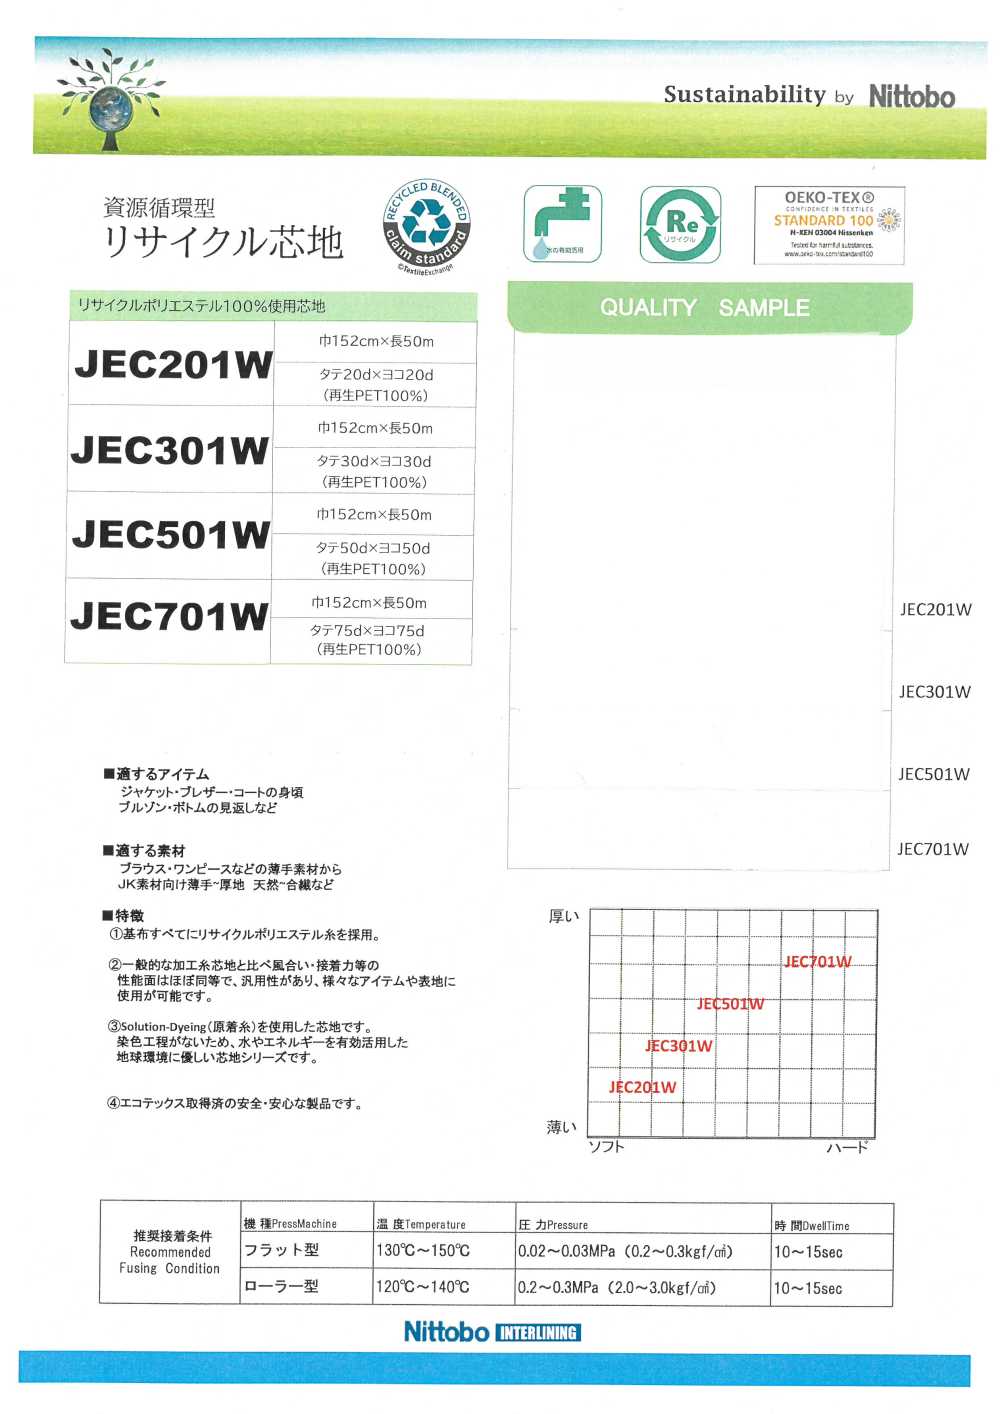 JEC301W Materiali Riciclati 30D Di Interlining Morbidi Versatili Sottili Utilizzati[Interfodera] Nittobo